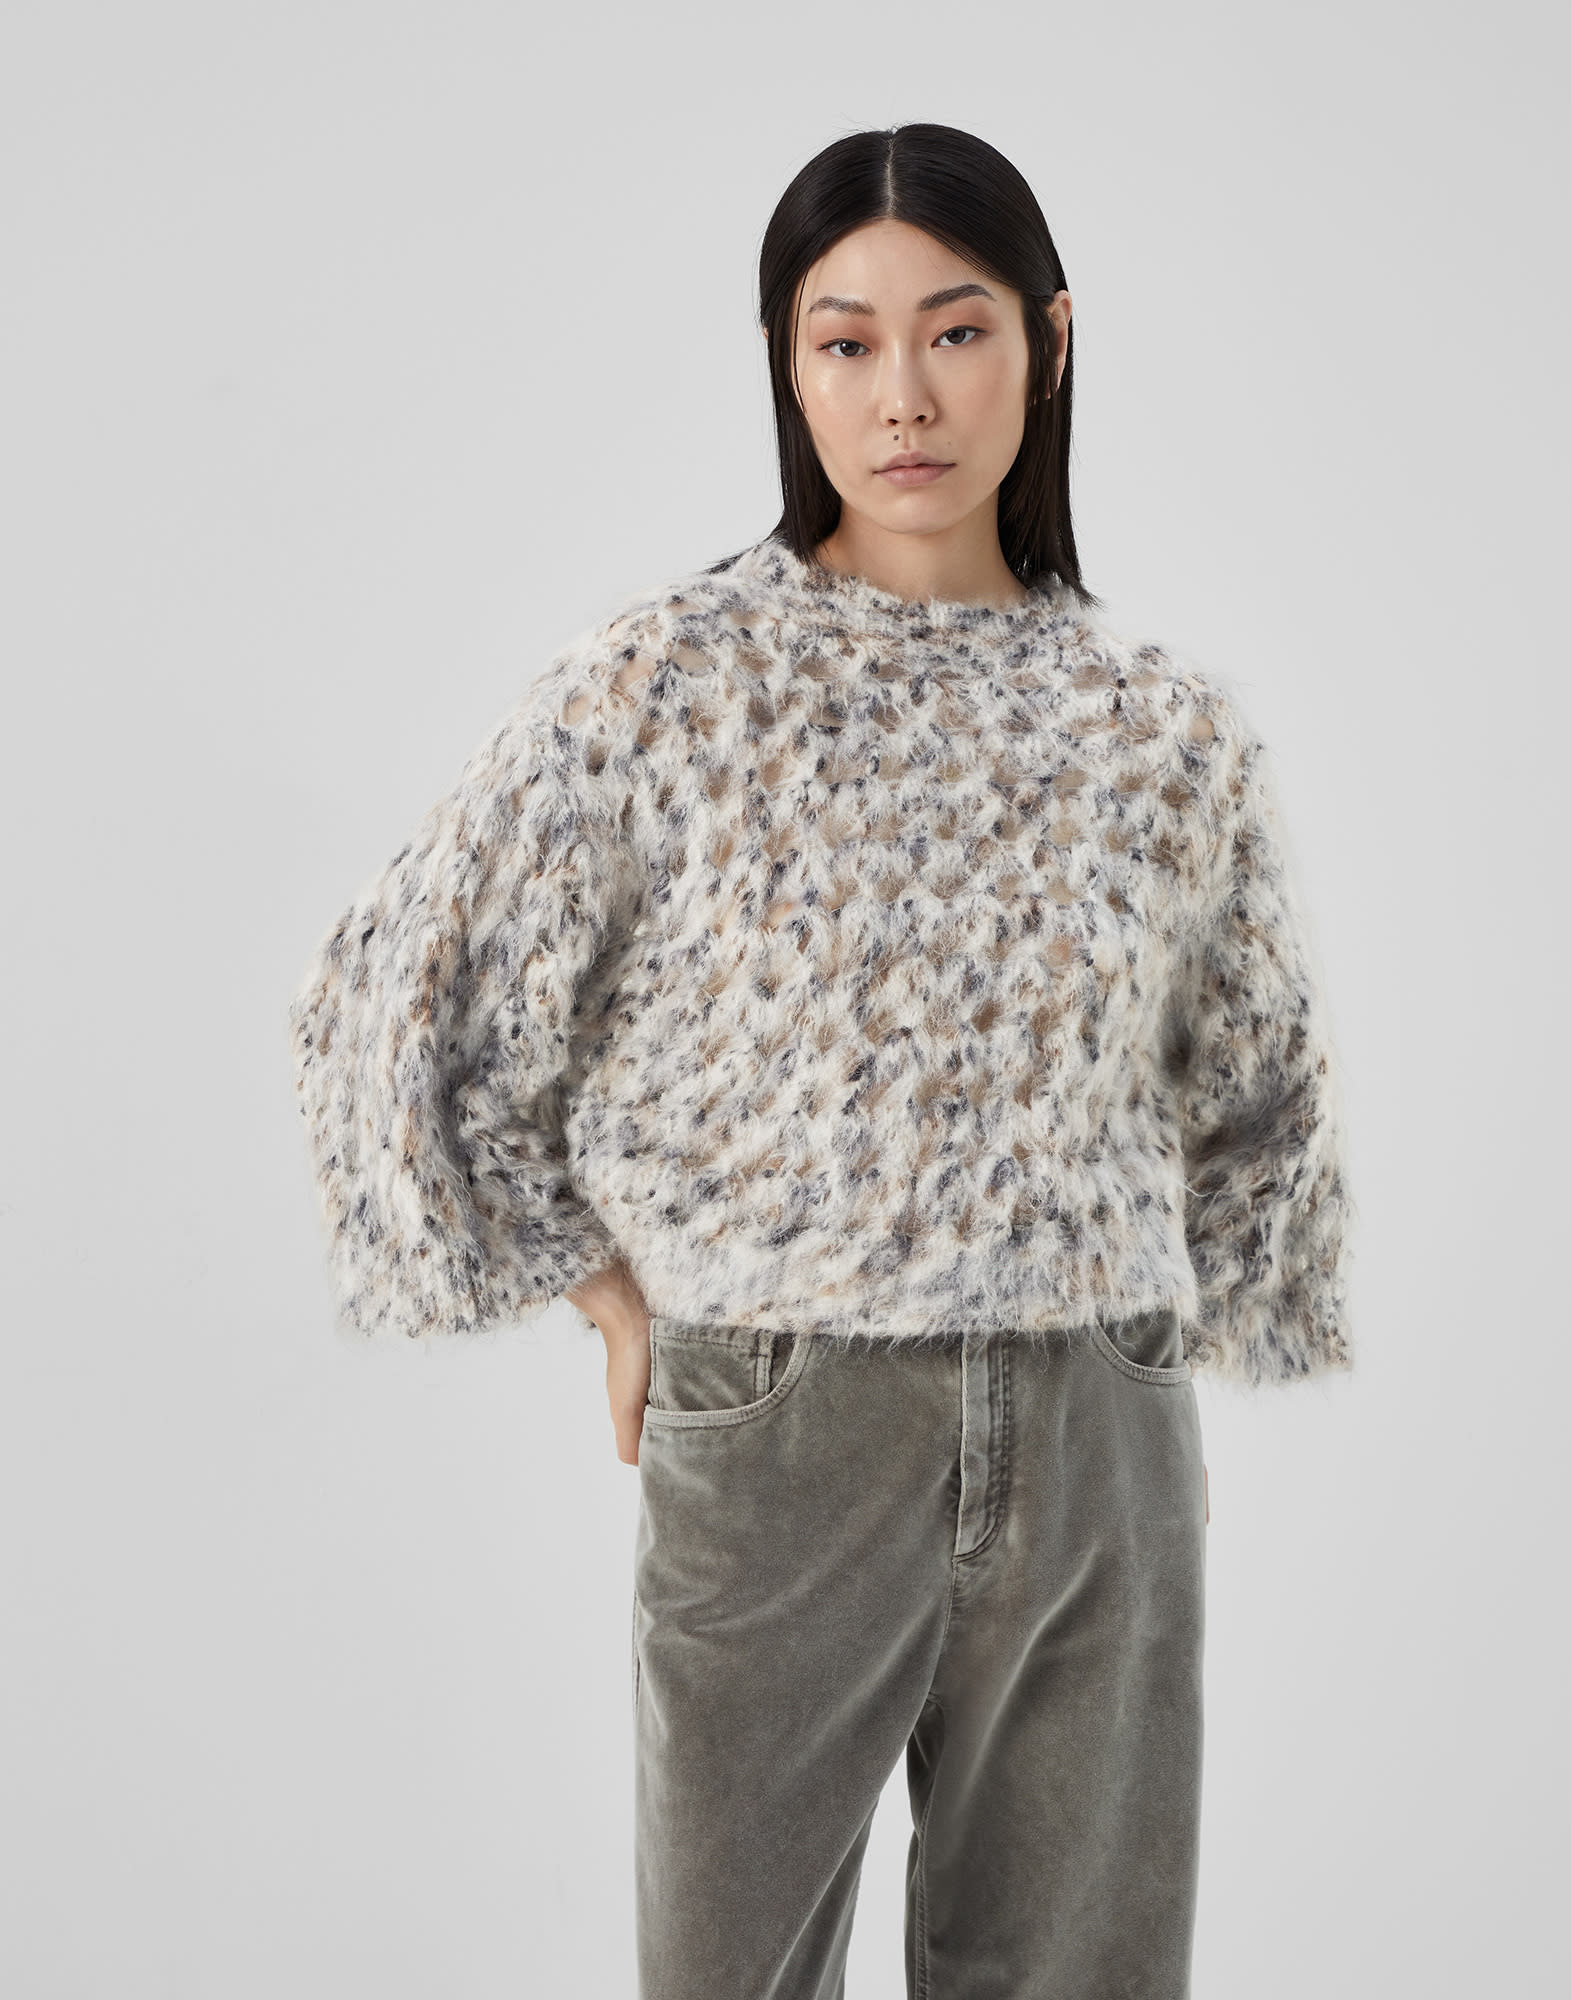 Jersey de mohair, lana y algodón